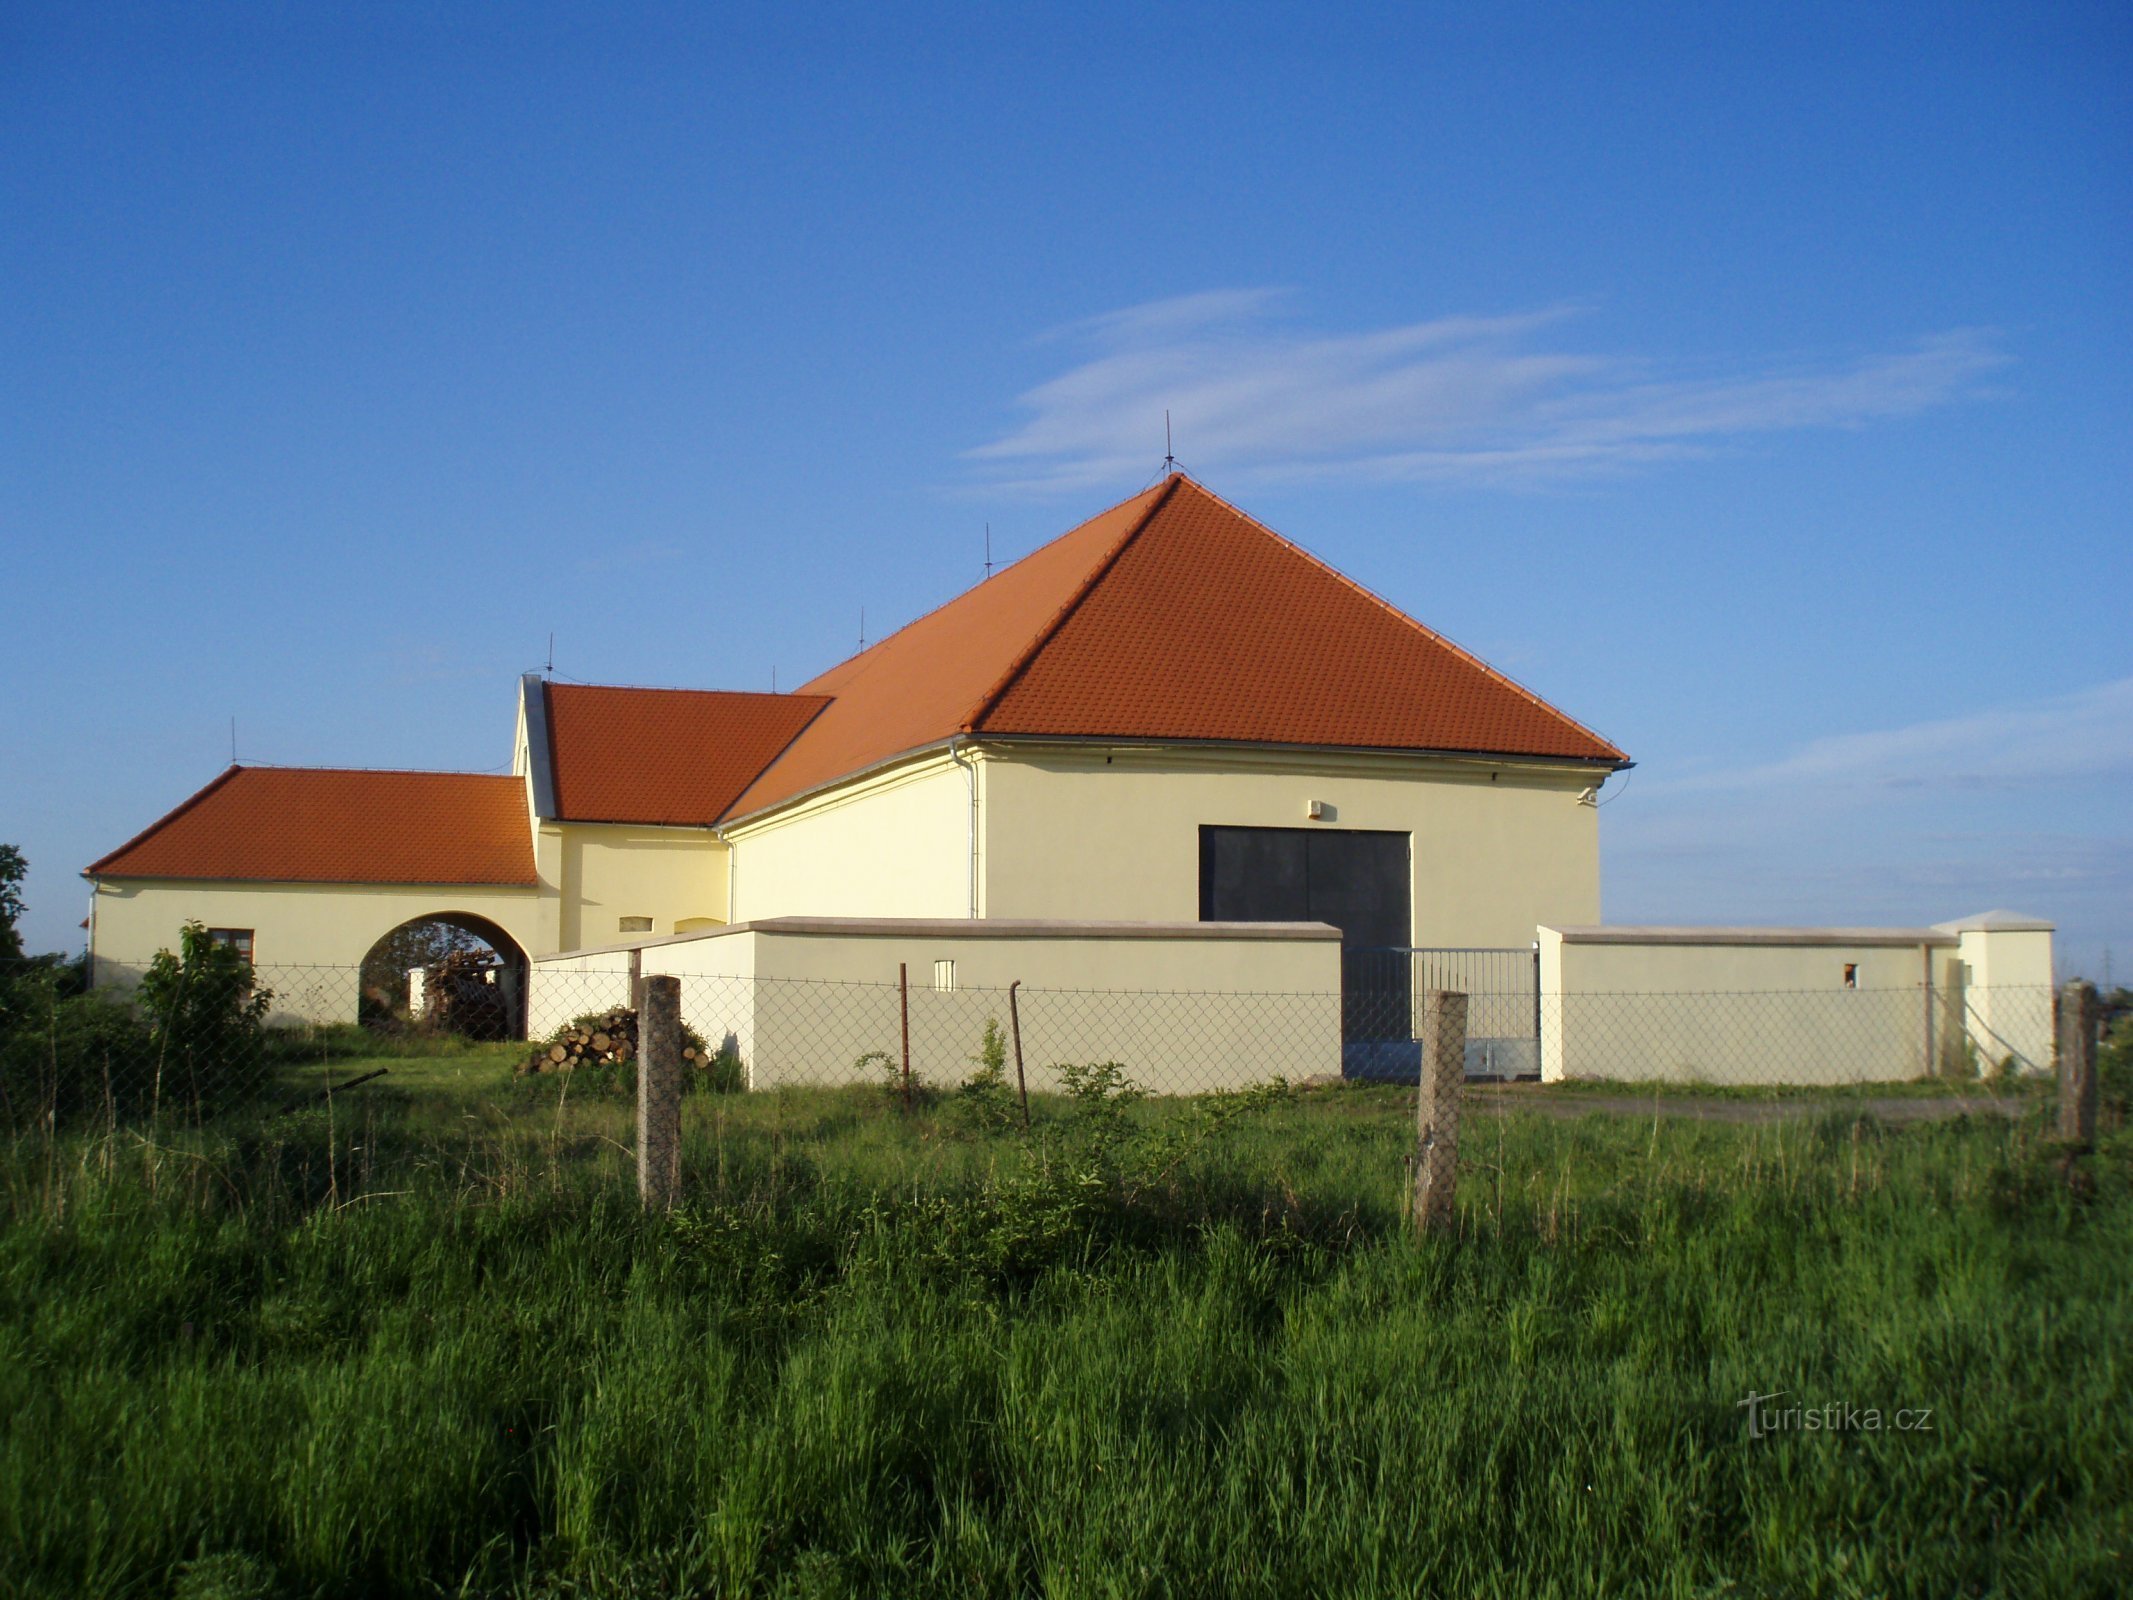 Εργοστάσιο πούδρας κοντά στο Kuklen (Hradec Králové, 8.5.2011 Μαΐου XNUMX)